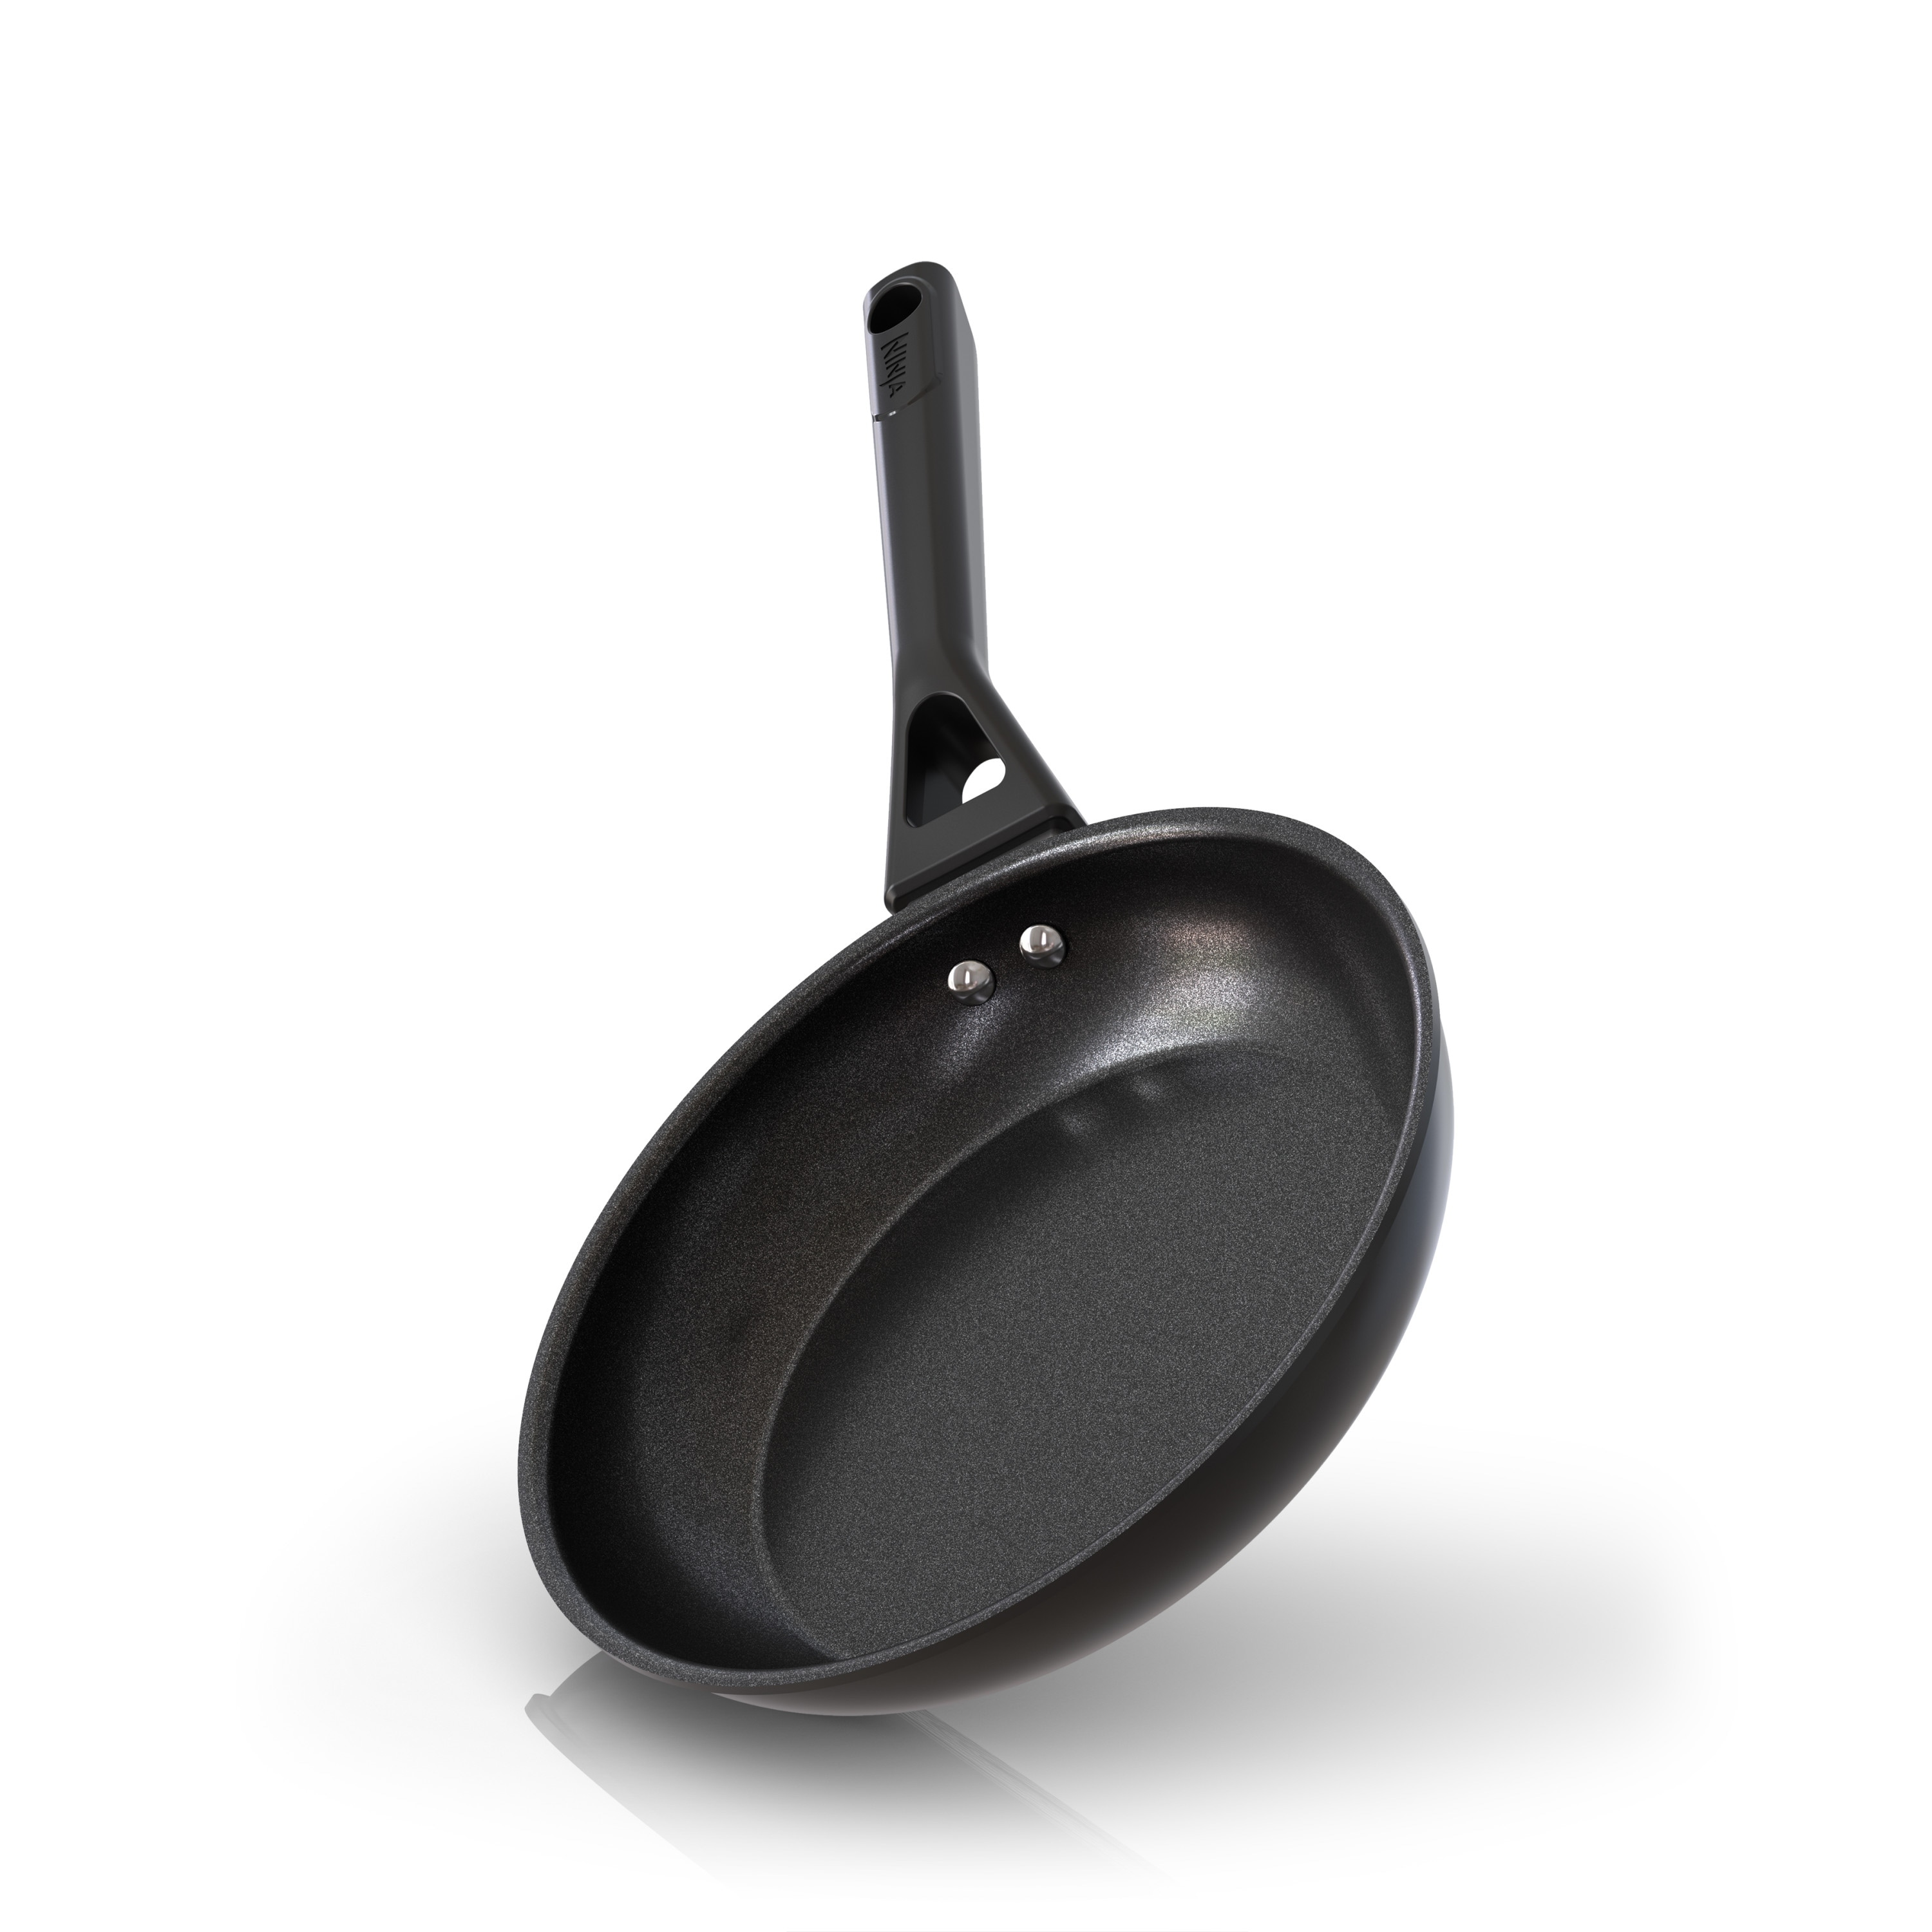 10 1/4-inch Pre-Seasoned Black Carbon Steel Skillet Pan